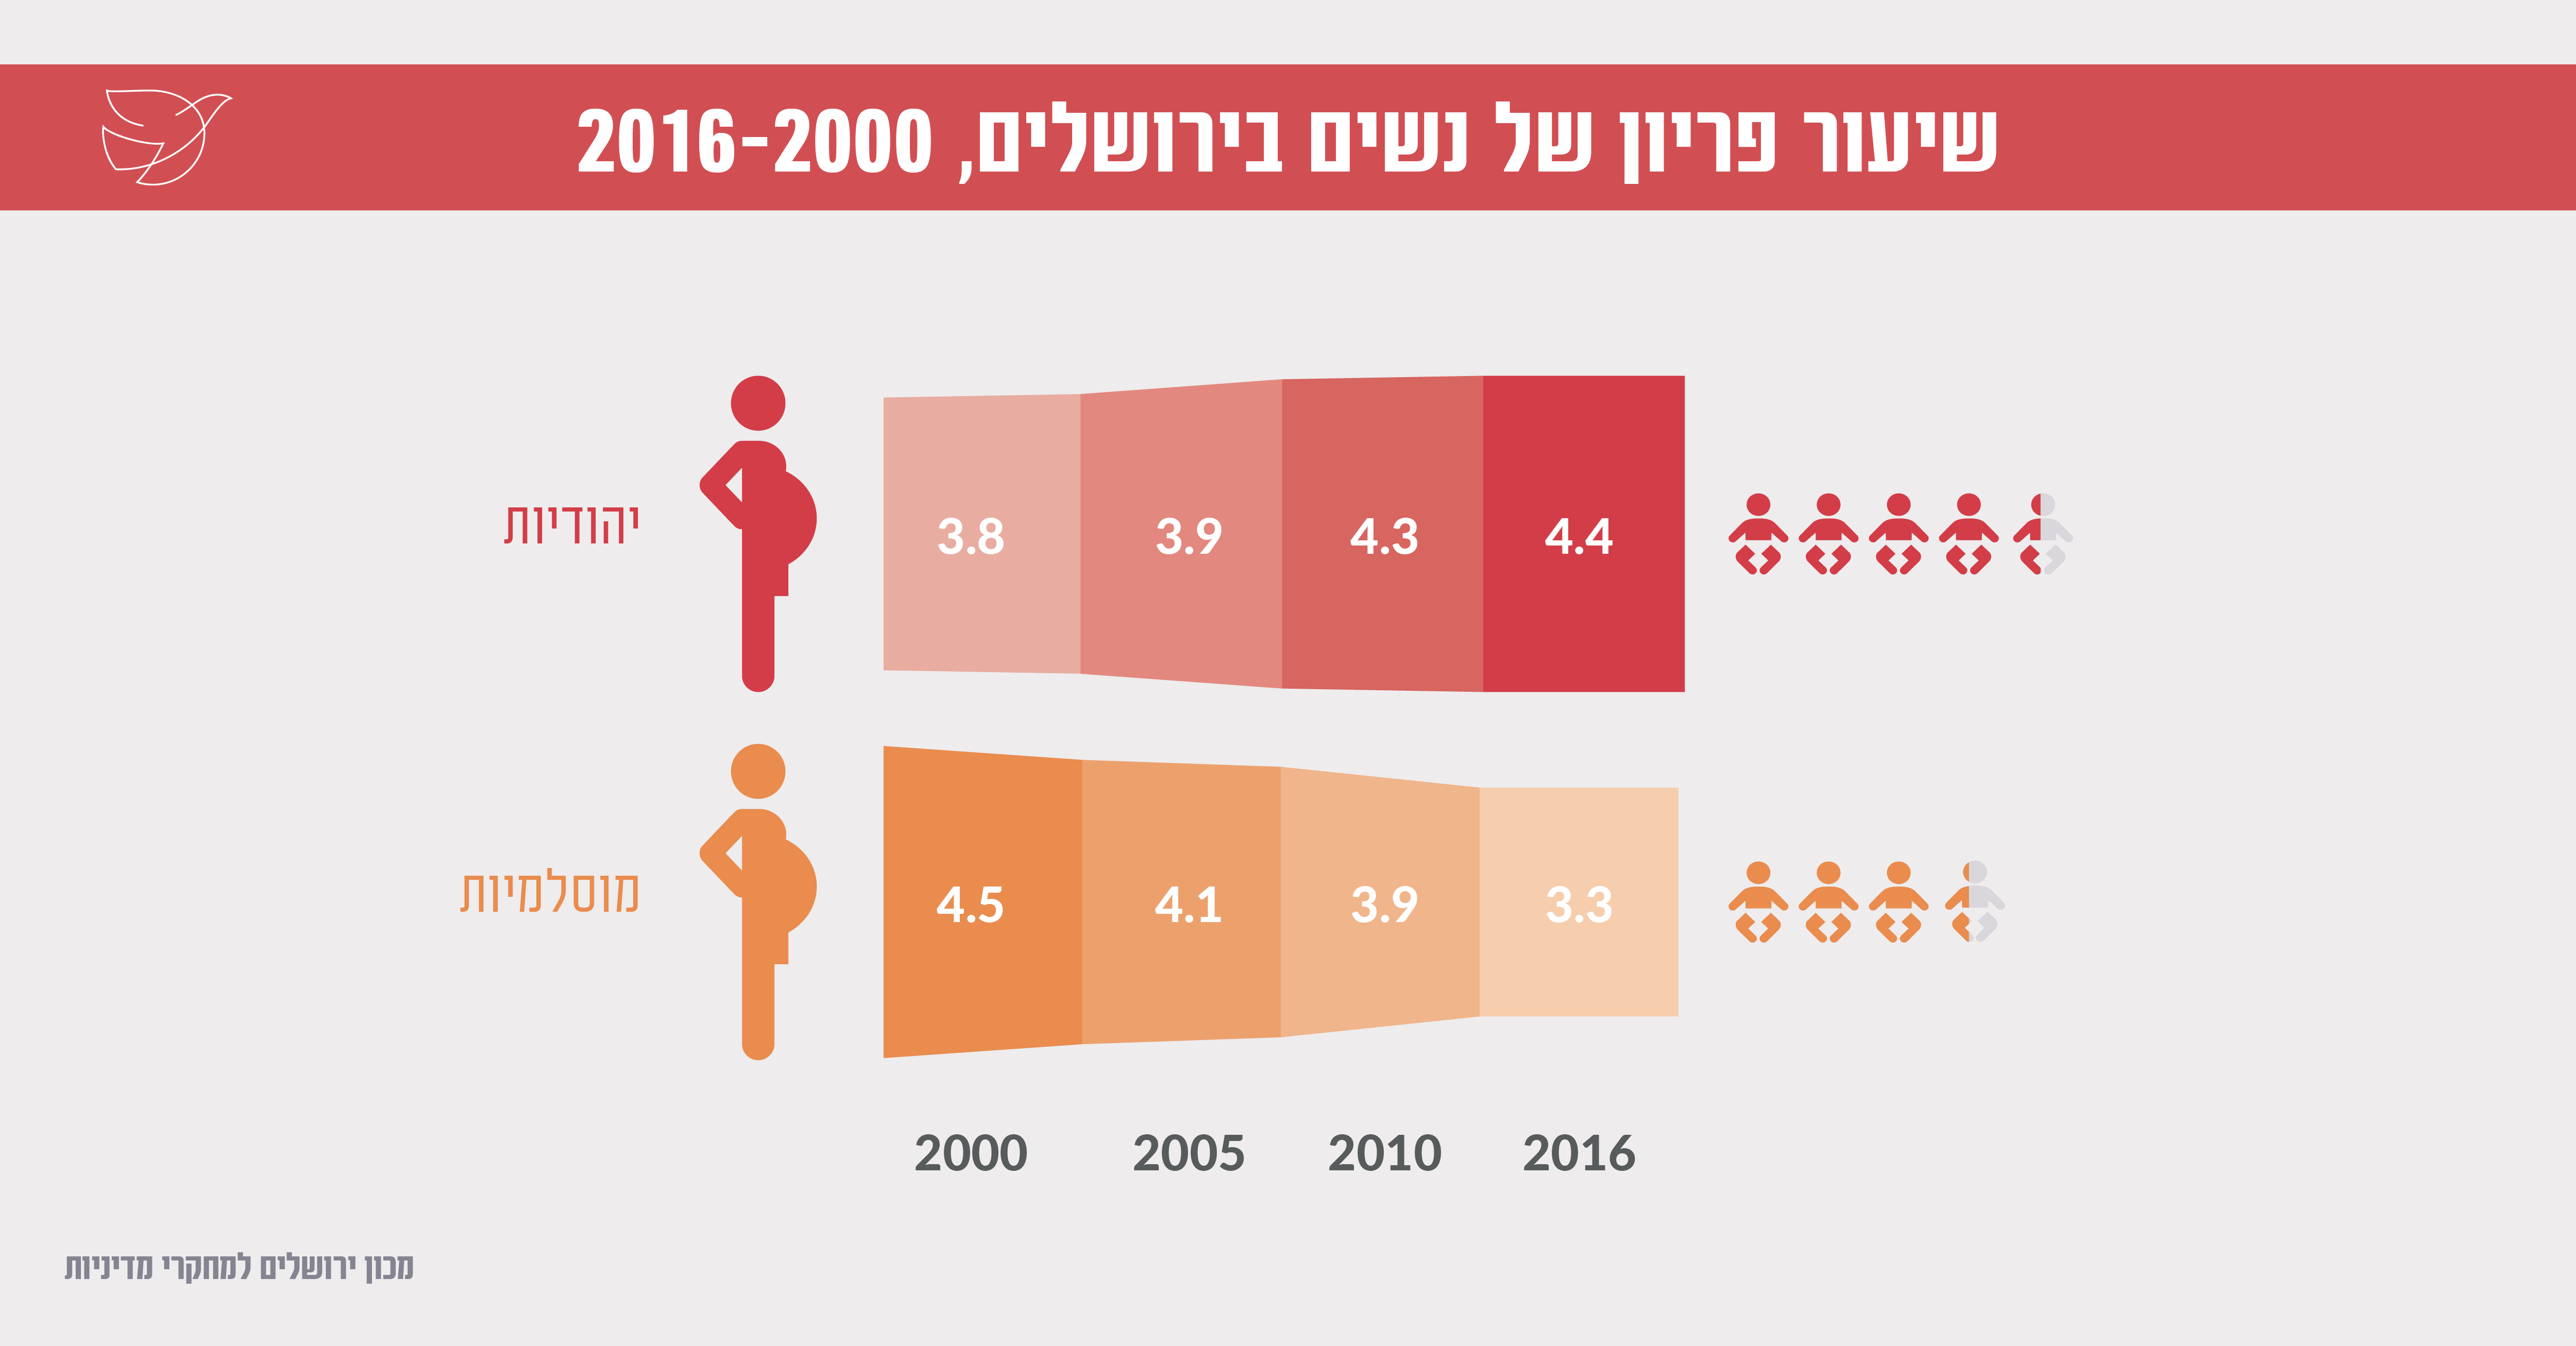 שיעורי פריון של נשים בירושלים, 2000-2016